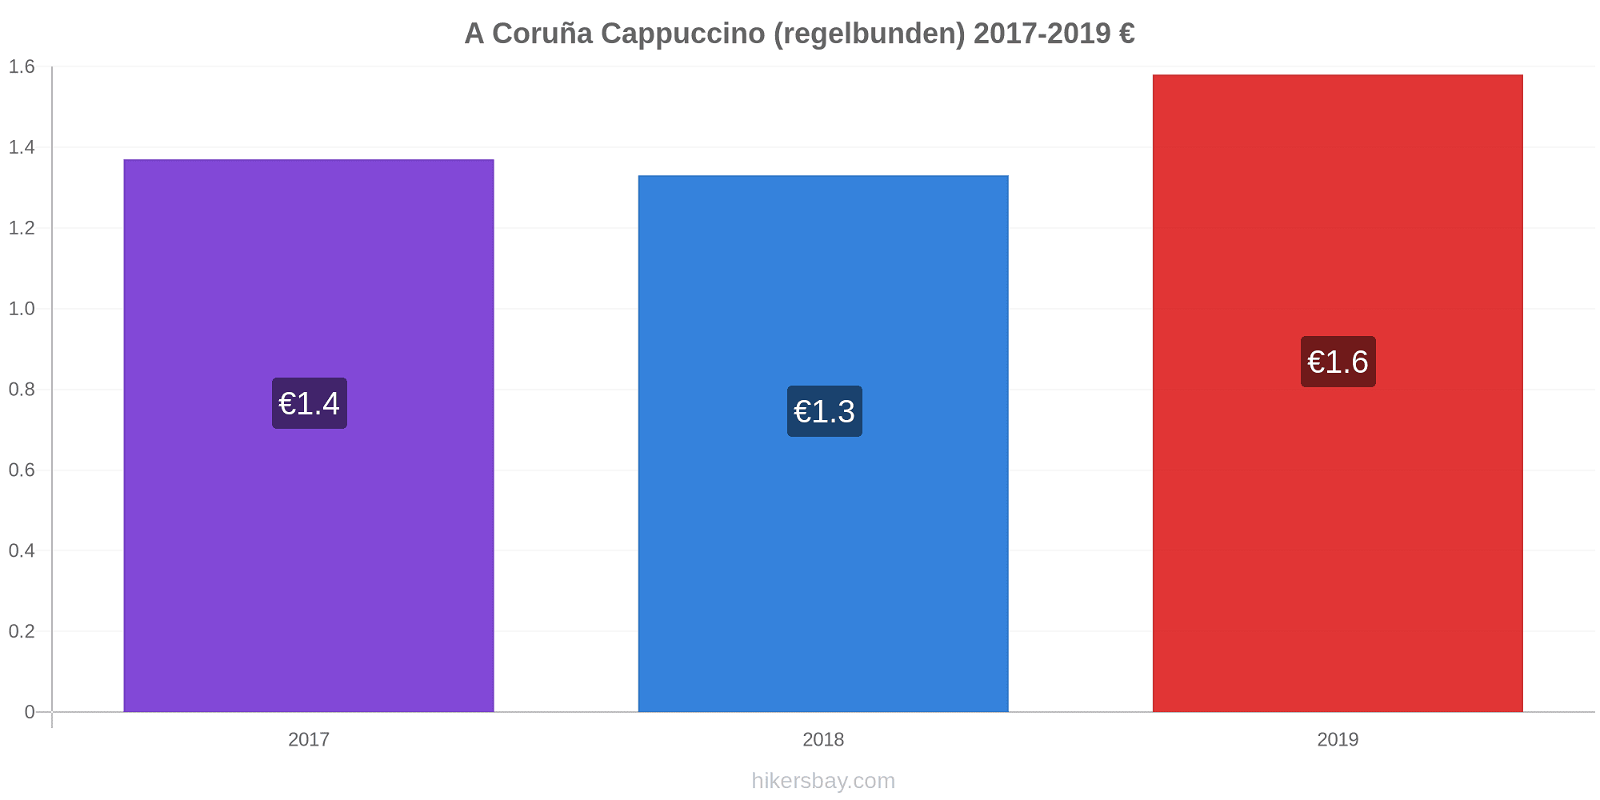 A Coruña prisförändringar Cappuccino (regelbunden) hikersbay.com